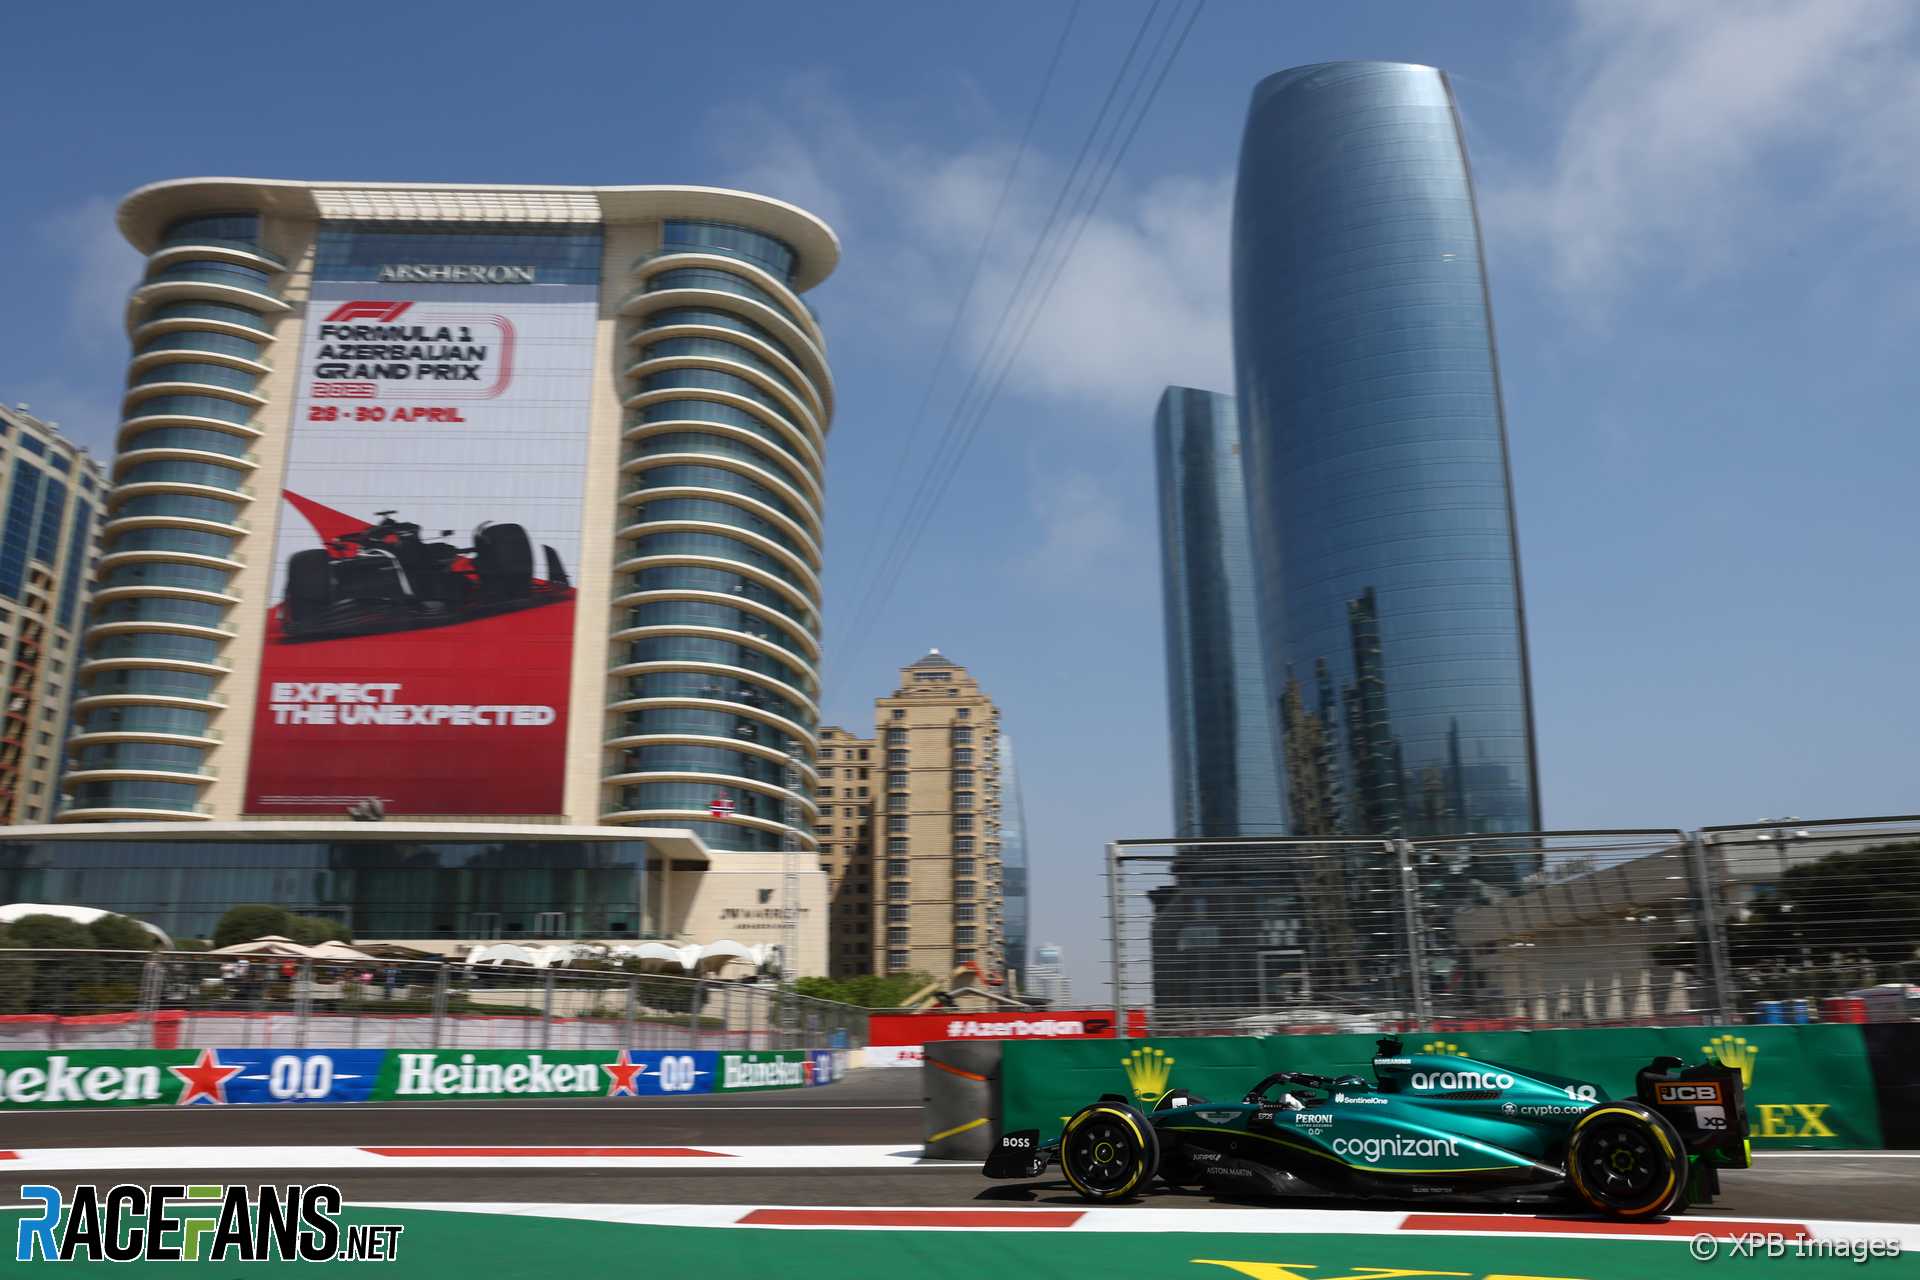 Sedemnásť jazdcov berie v Baku nové diely pohonnej jednotky po tom, čo FIA uvoľní pravidlá · RaceFans